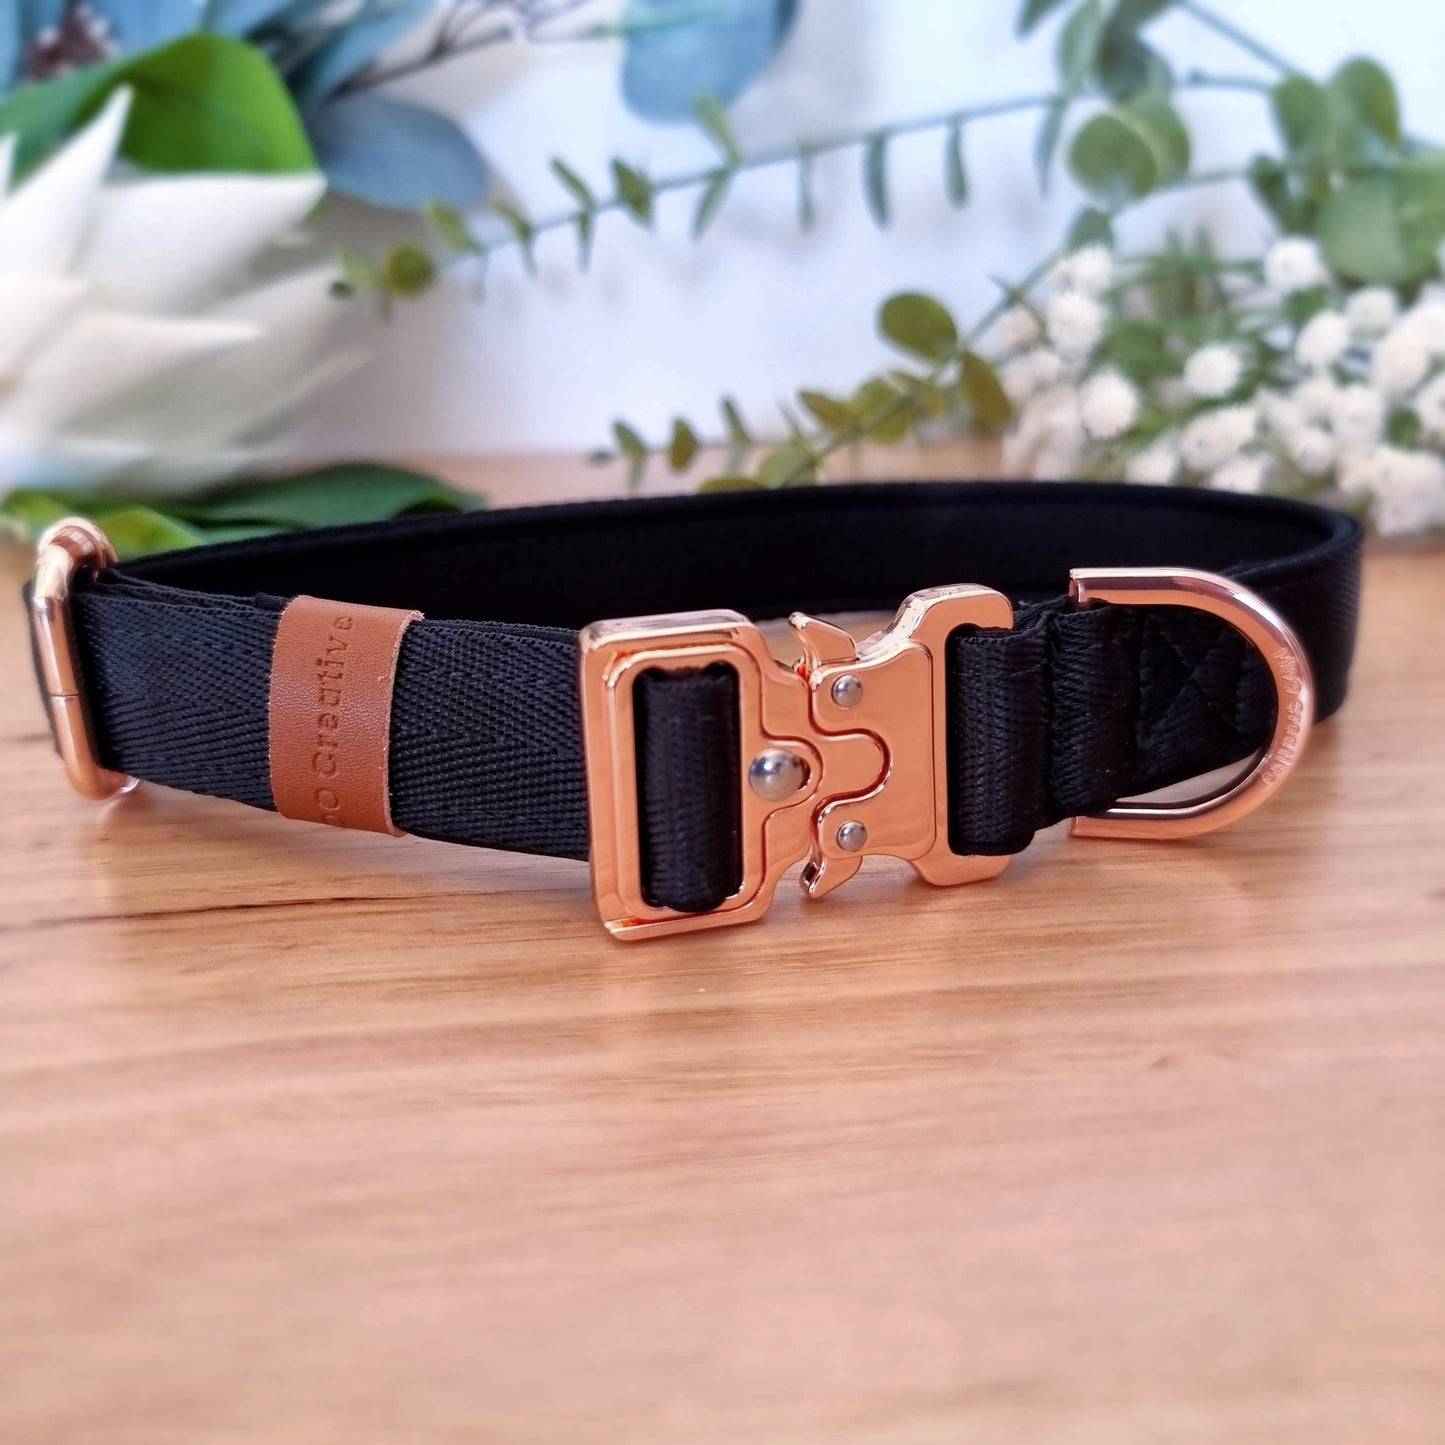 Black buckle dog collar - neoprene padded